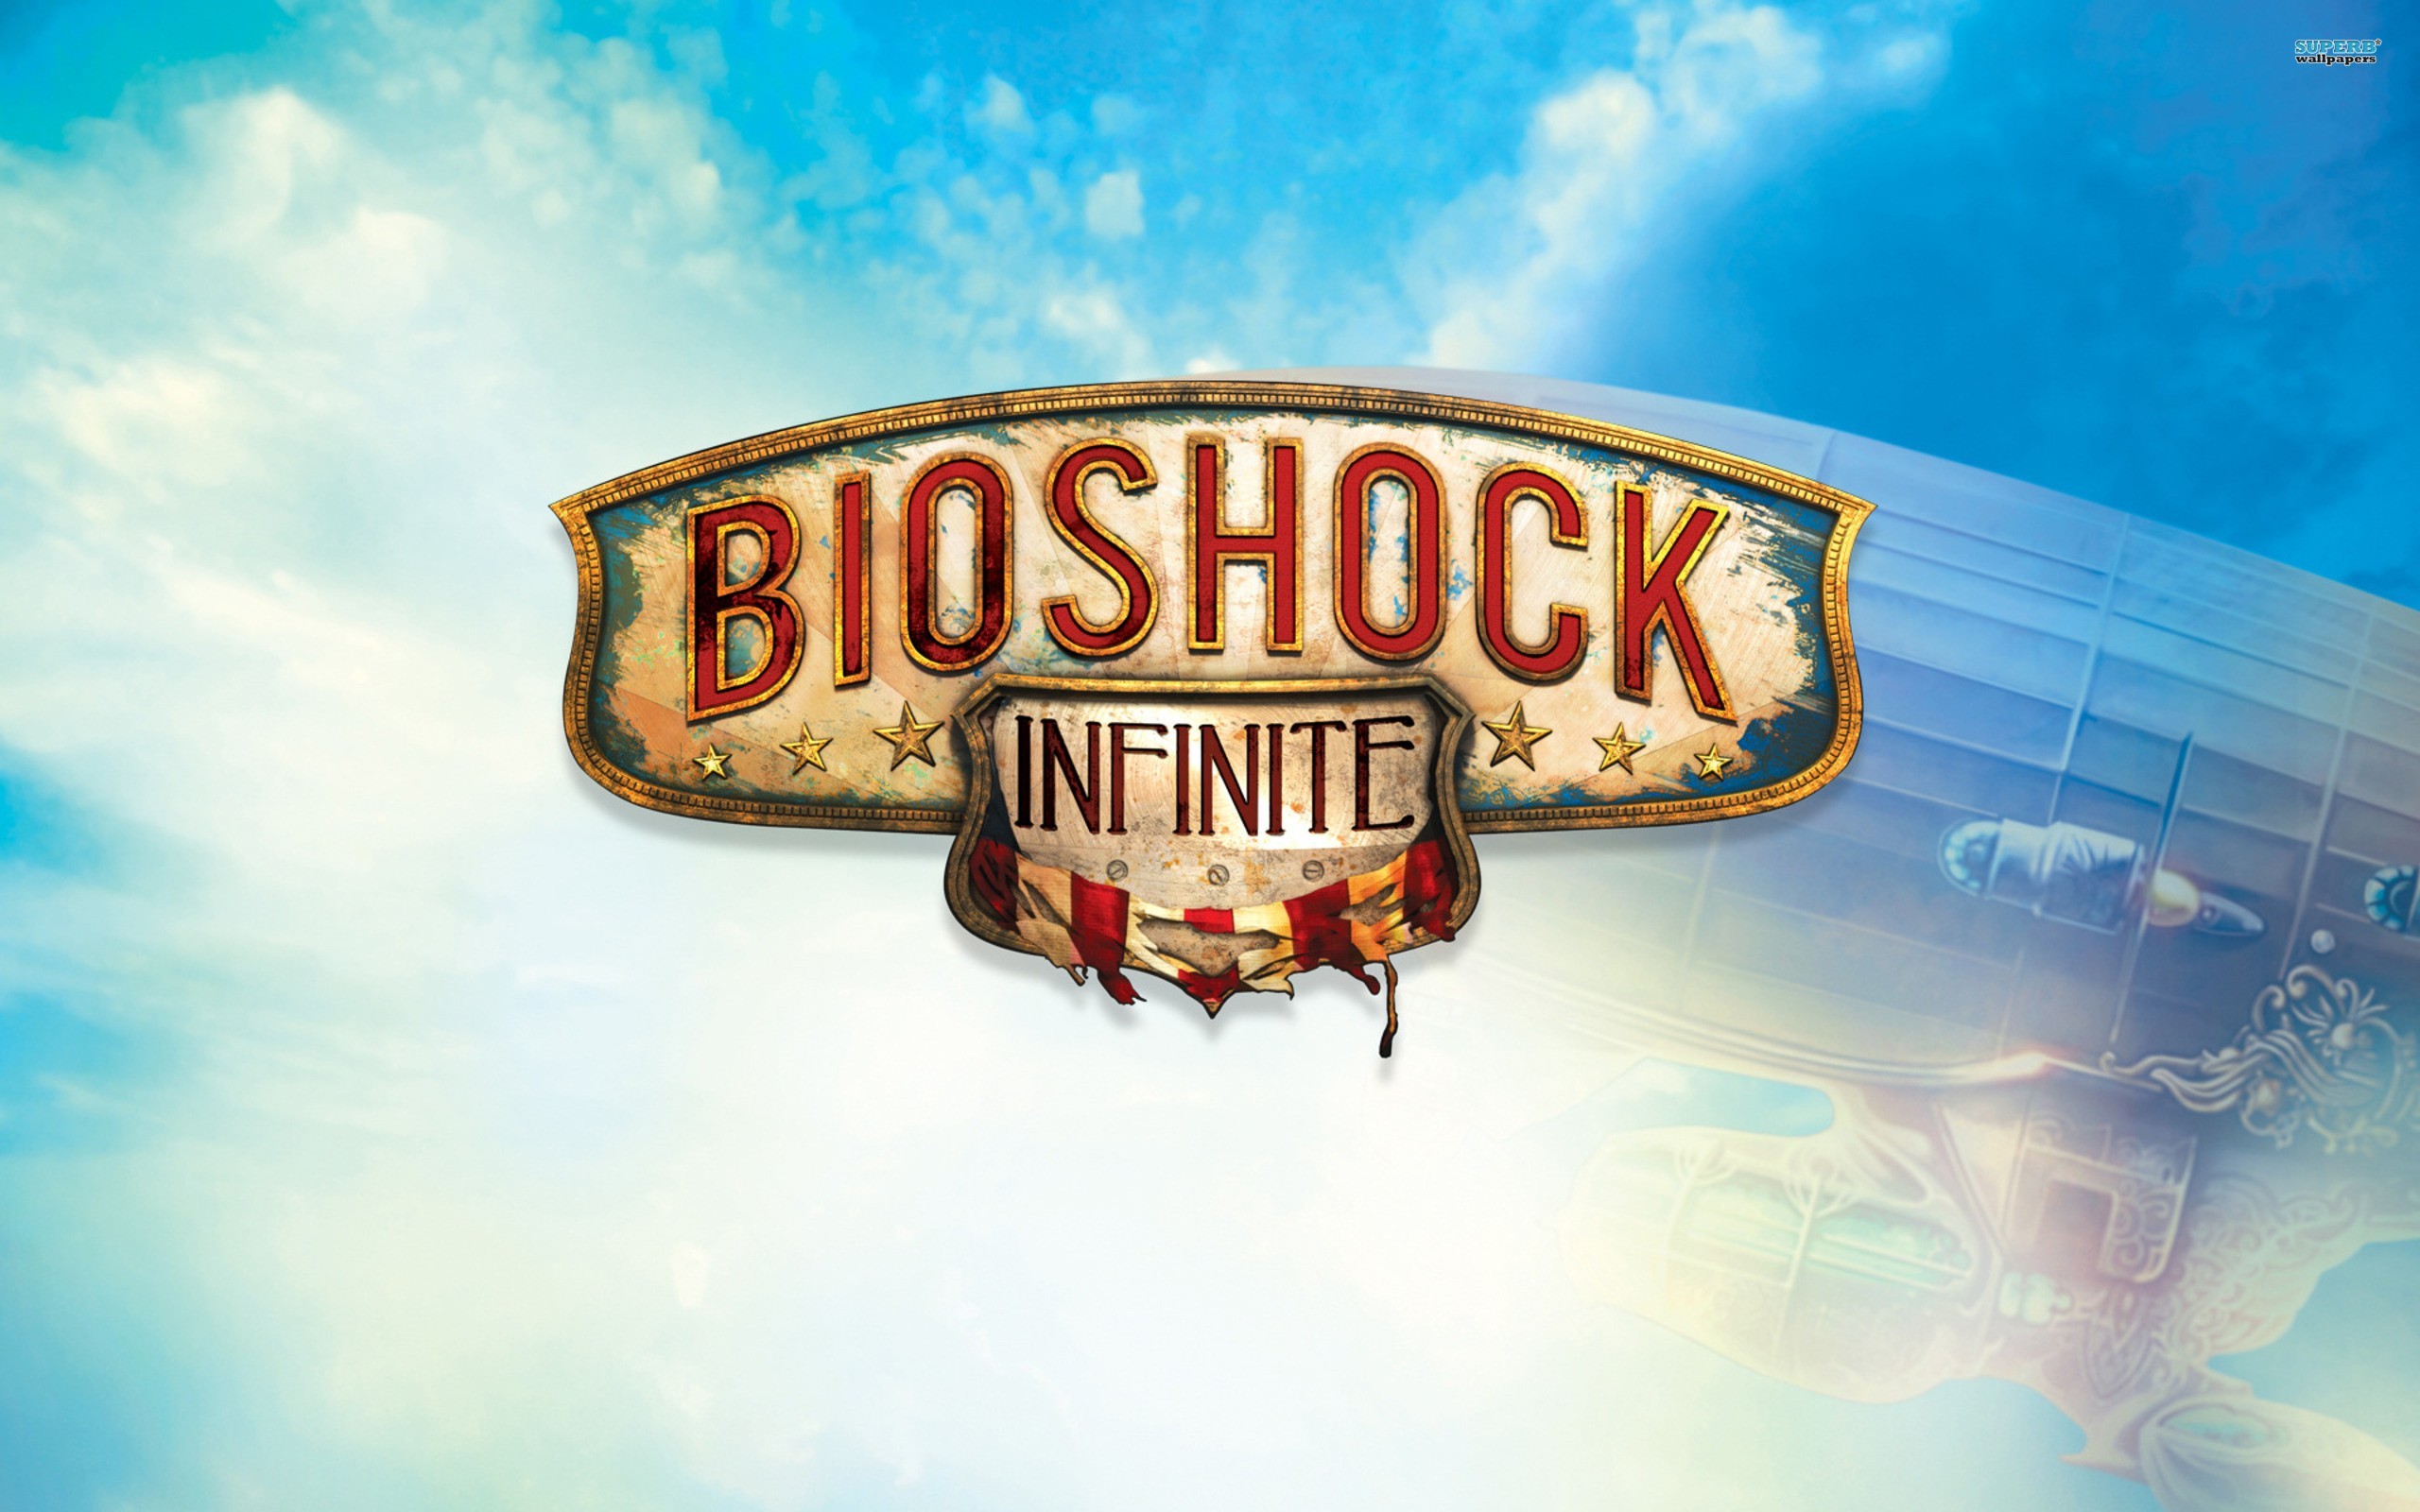 General 2560x1600 BioShock Infinite video games cyan PC gaming logo